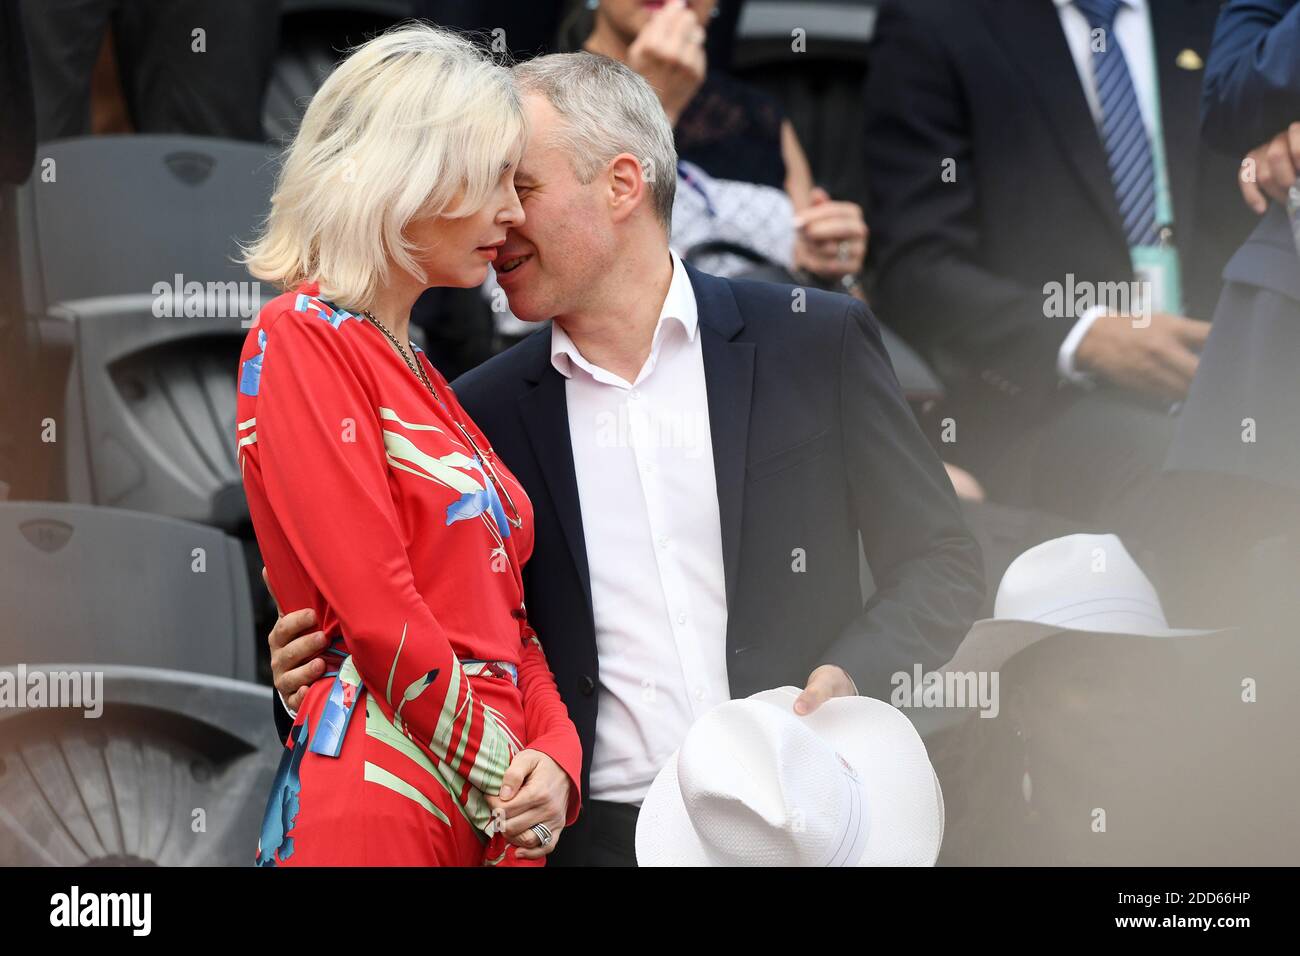 Le Président de l'Assemblée nationale François de Rugy et son épouse  Severine Servat assistent à la finale hommes de l'Open de France 2018 à  Roland Garros le 10 juin 2018 à Paris,